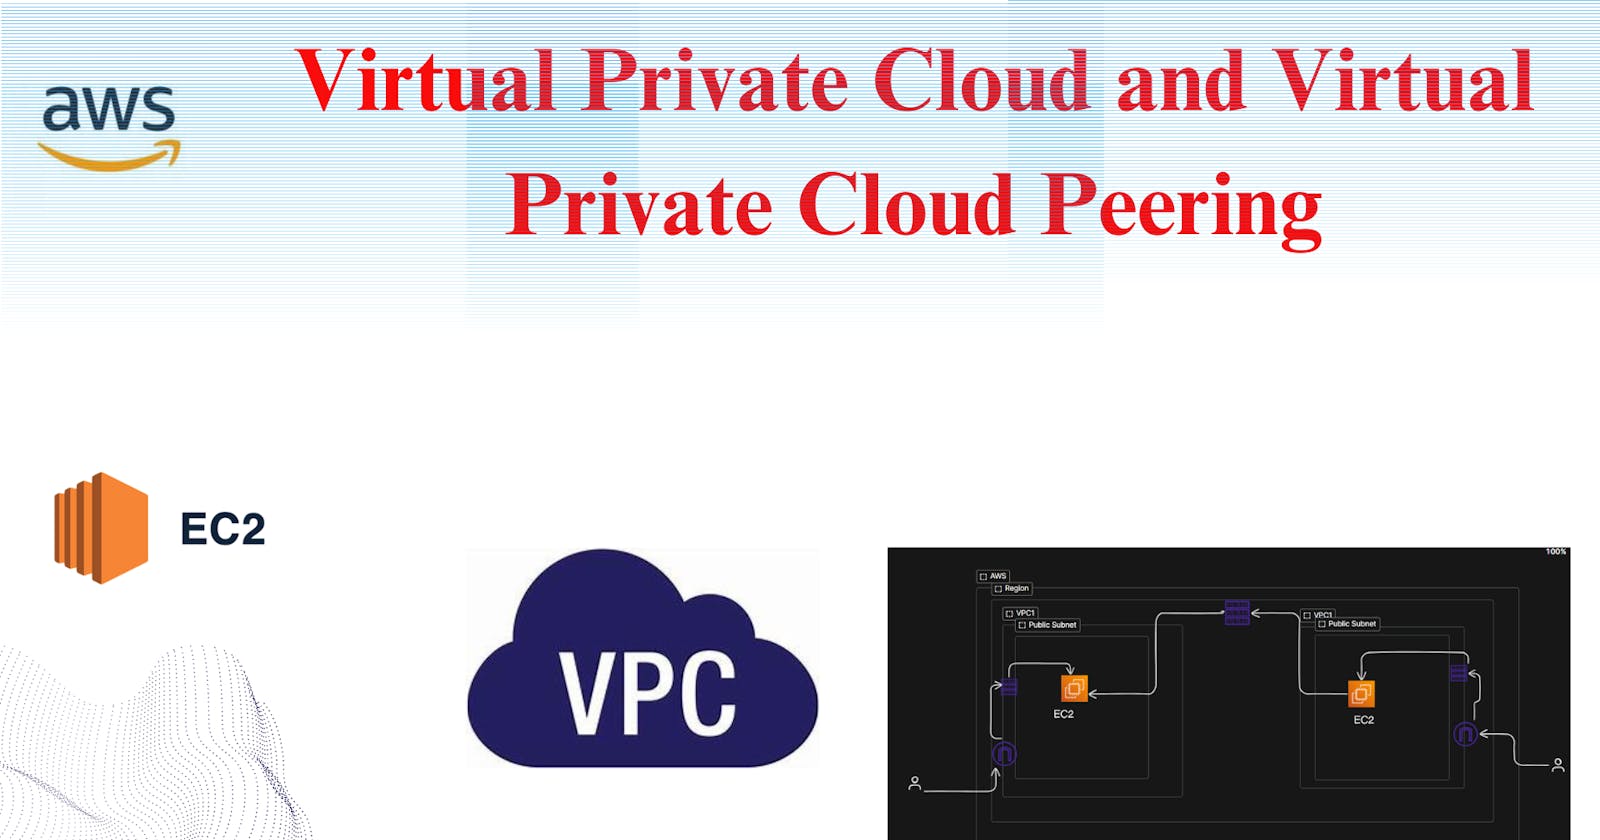 Virtual Private Cloud and Virtual Private Cloud Peering